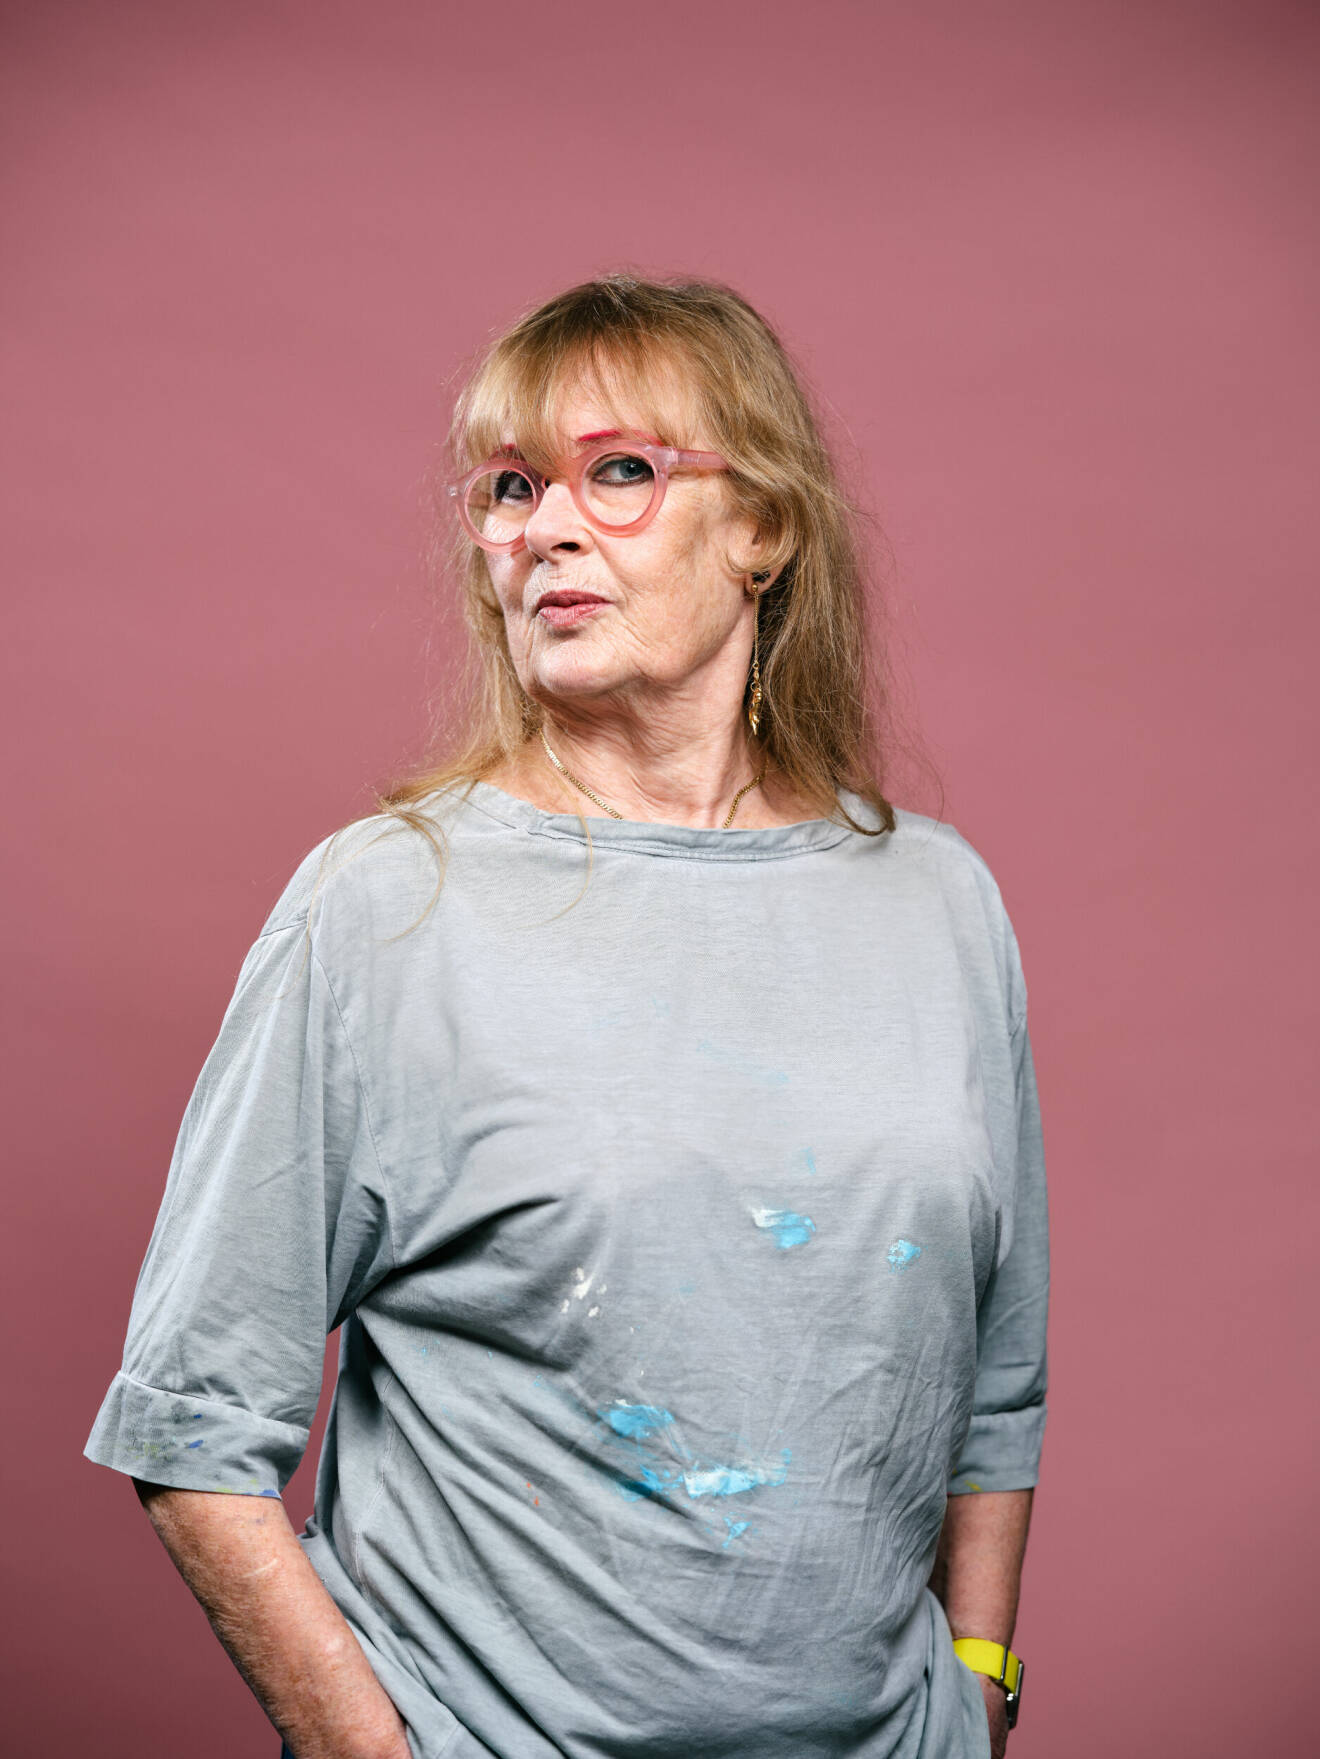 Konstnären Marie-Louise i tröja med färgfläckar.